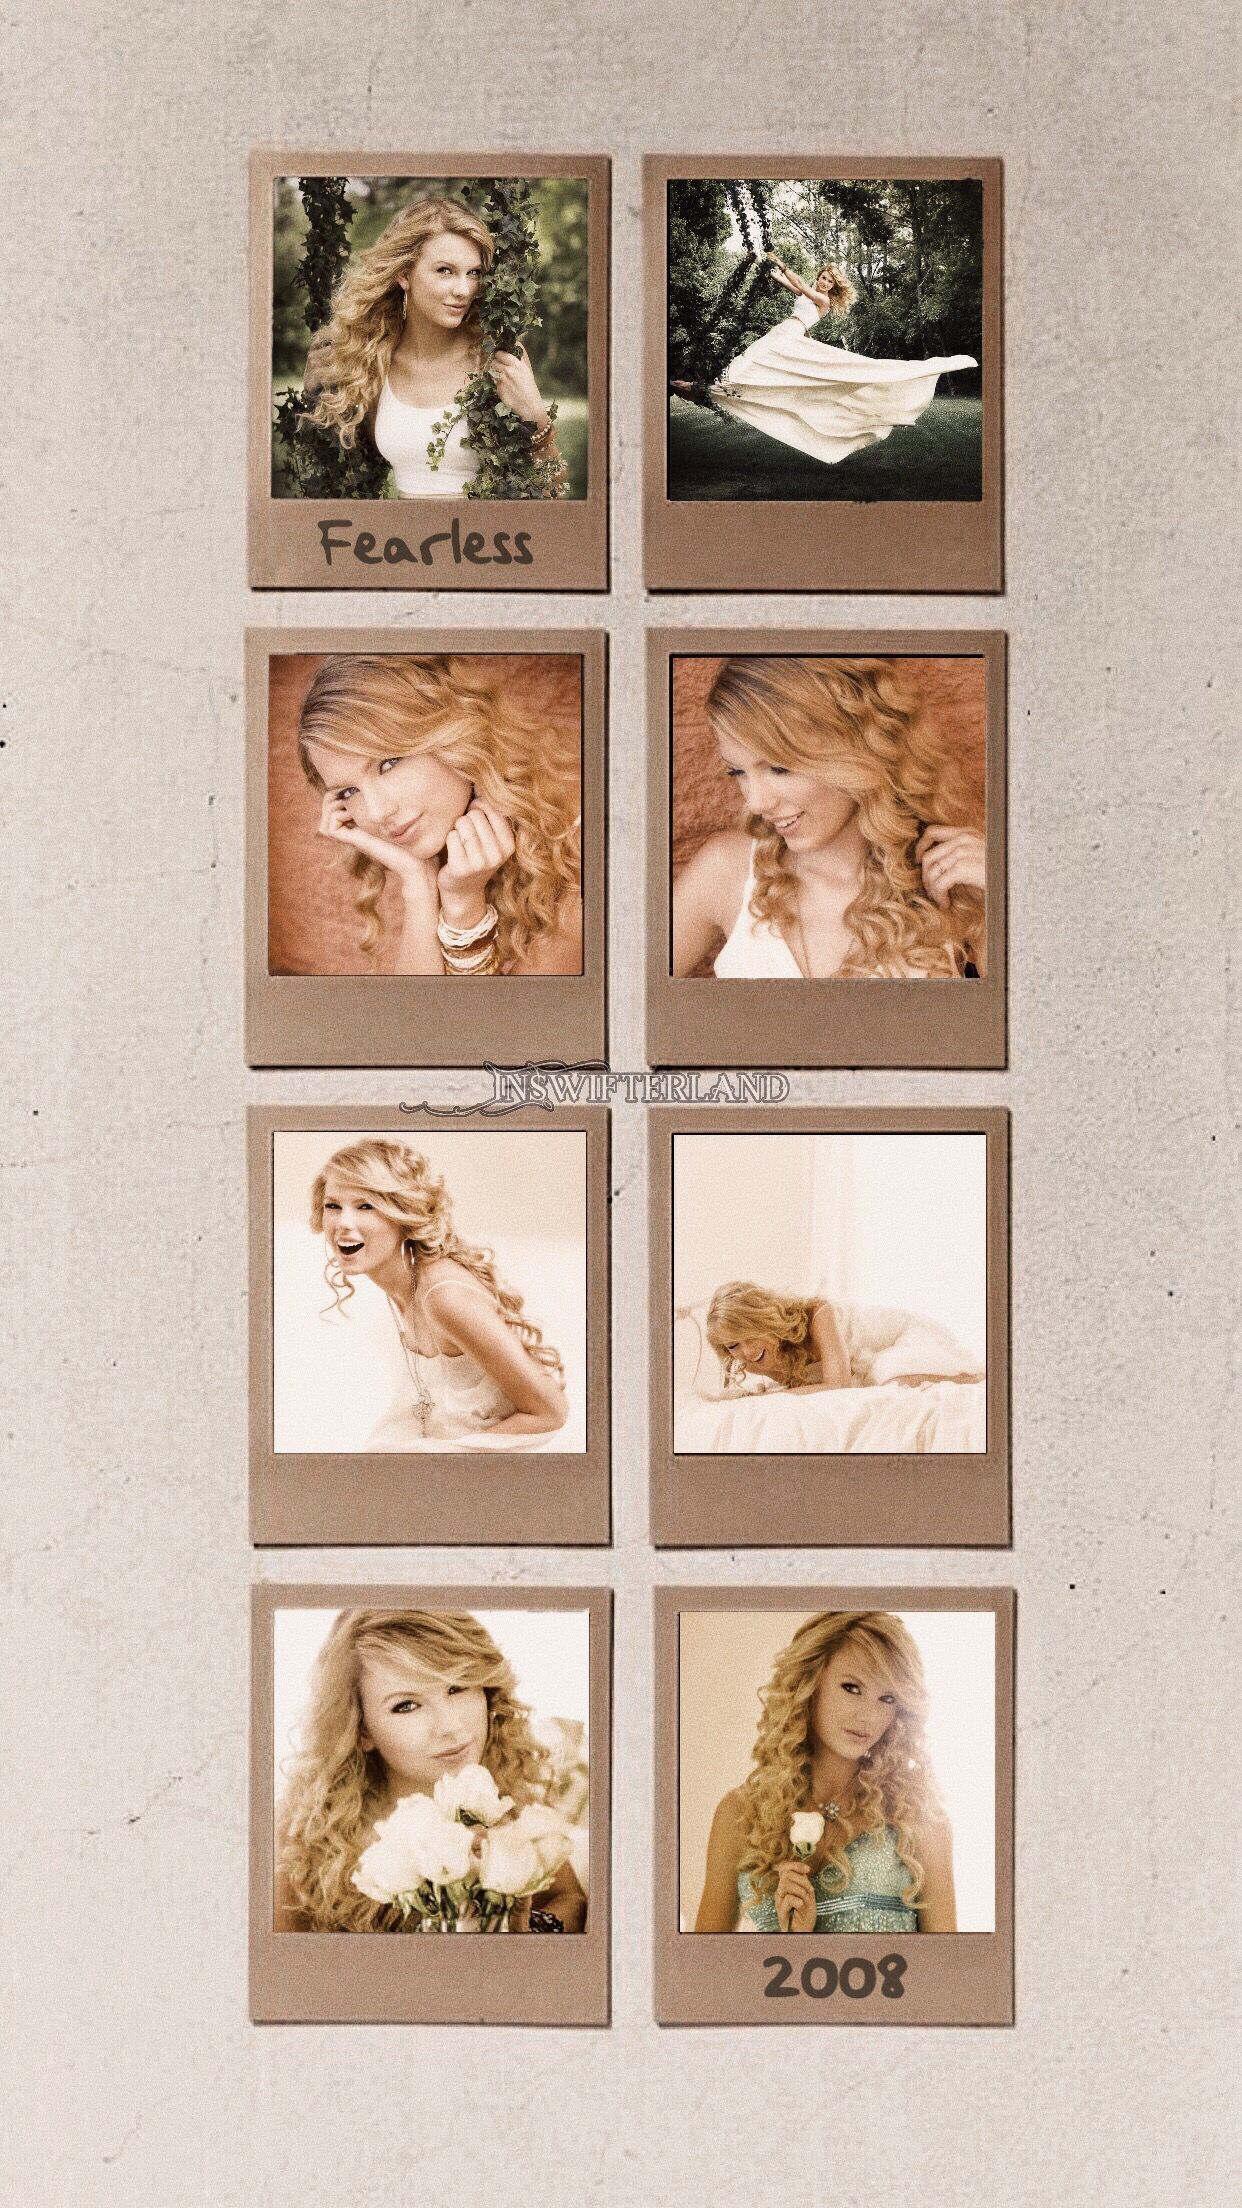 Taylor Swift Wallpaper. Taylor swift fearless, Taylor swift wallpaper, Taylor swift album